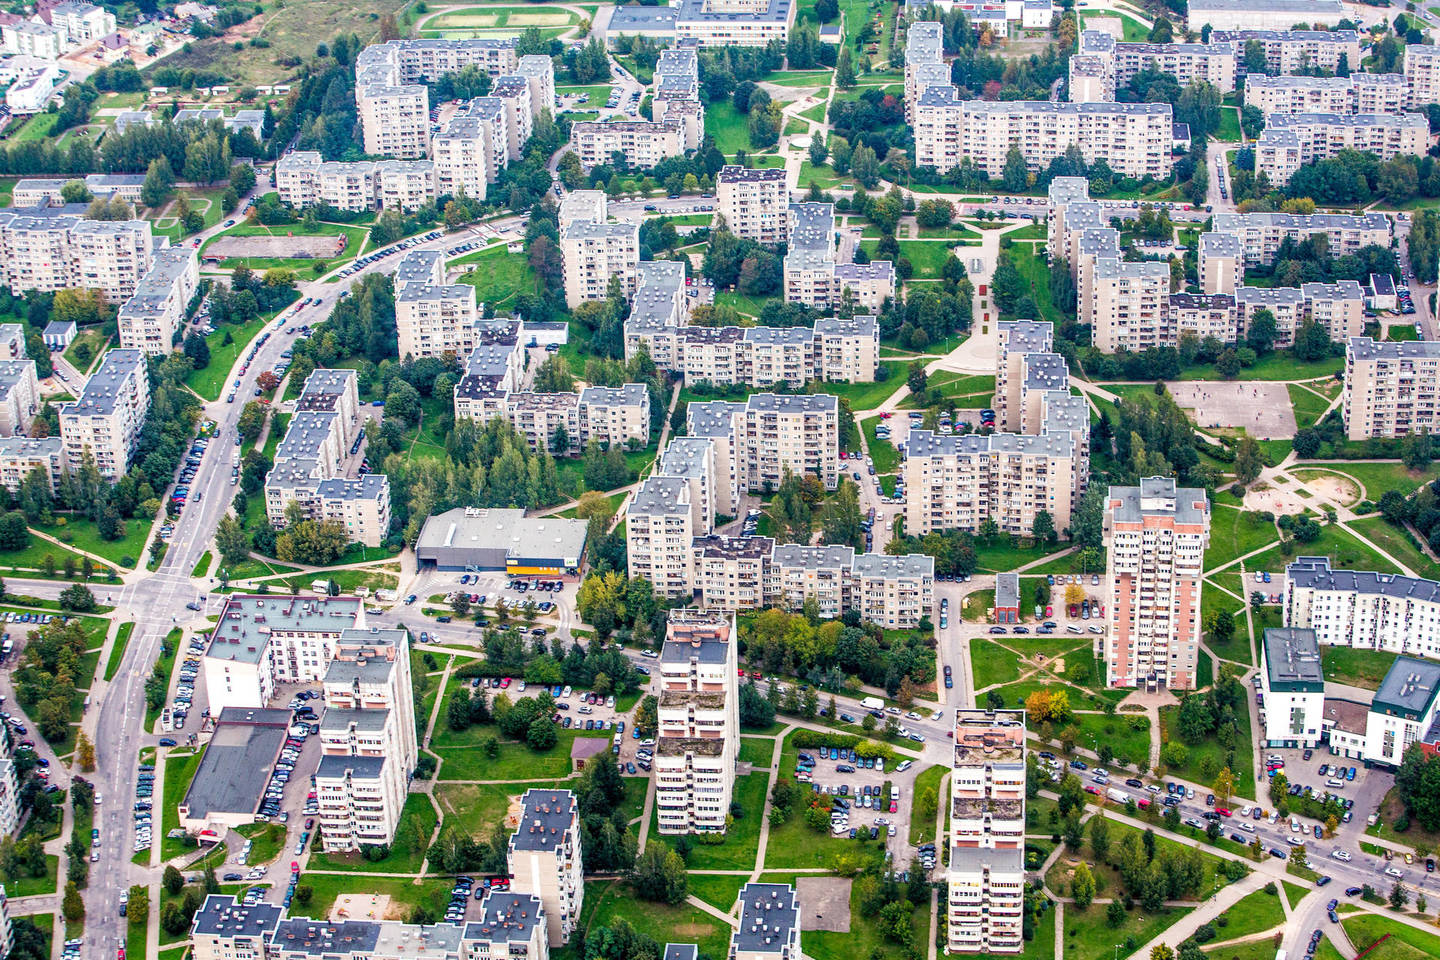 Vilniečio įperkamas būsto plotas vis dar yra mažiausias iš trijų Baltijos šalių sostinių gyventojų butų.<br>V.Balkūno nuotr.